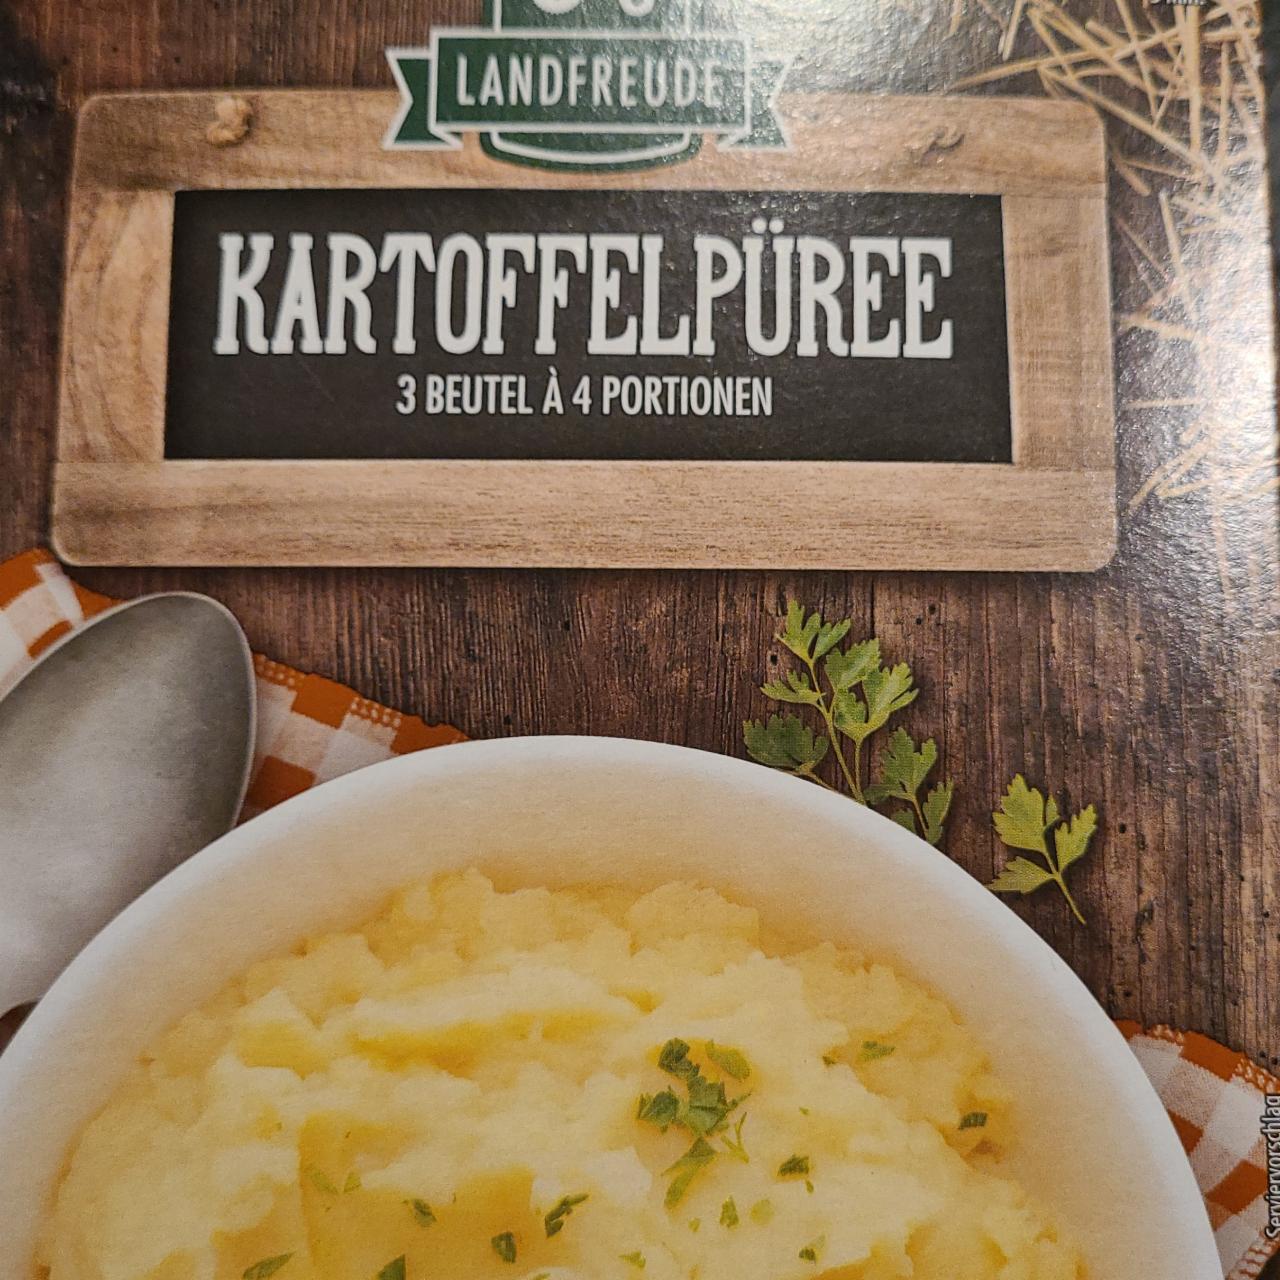 Фото - Картопельне пюре Kartoffel pure Landfreude